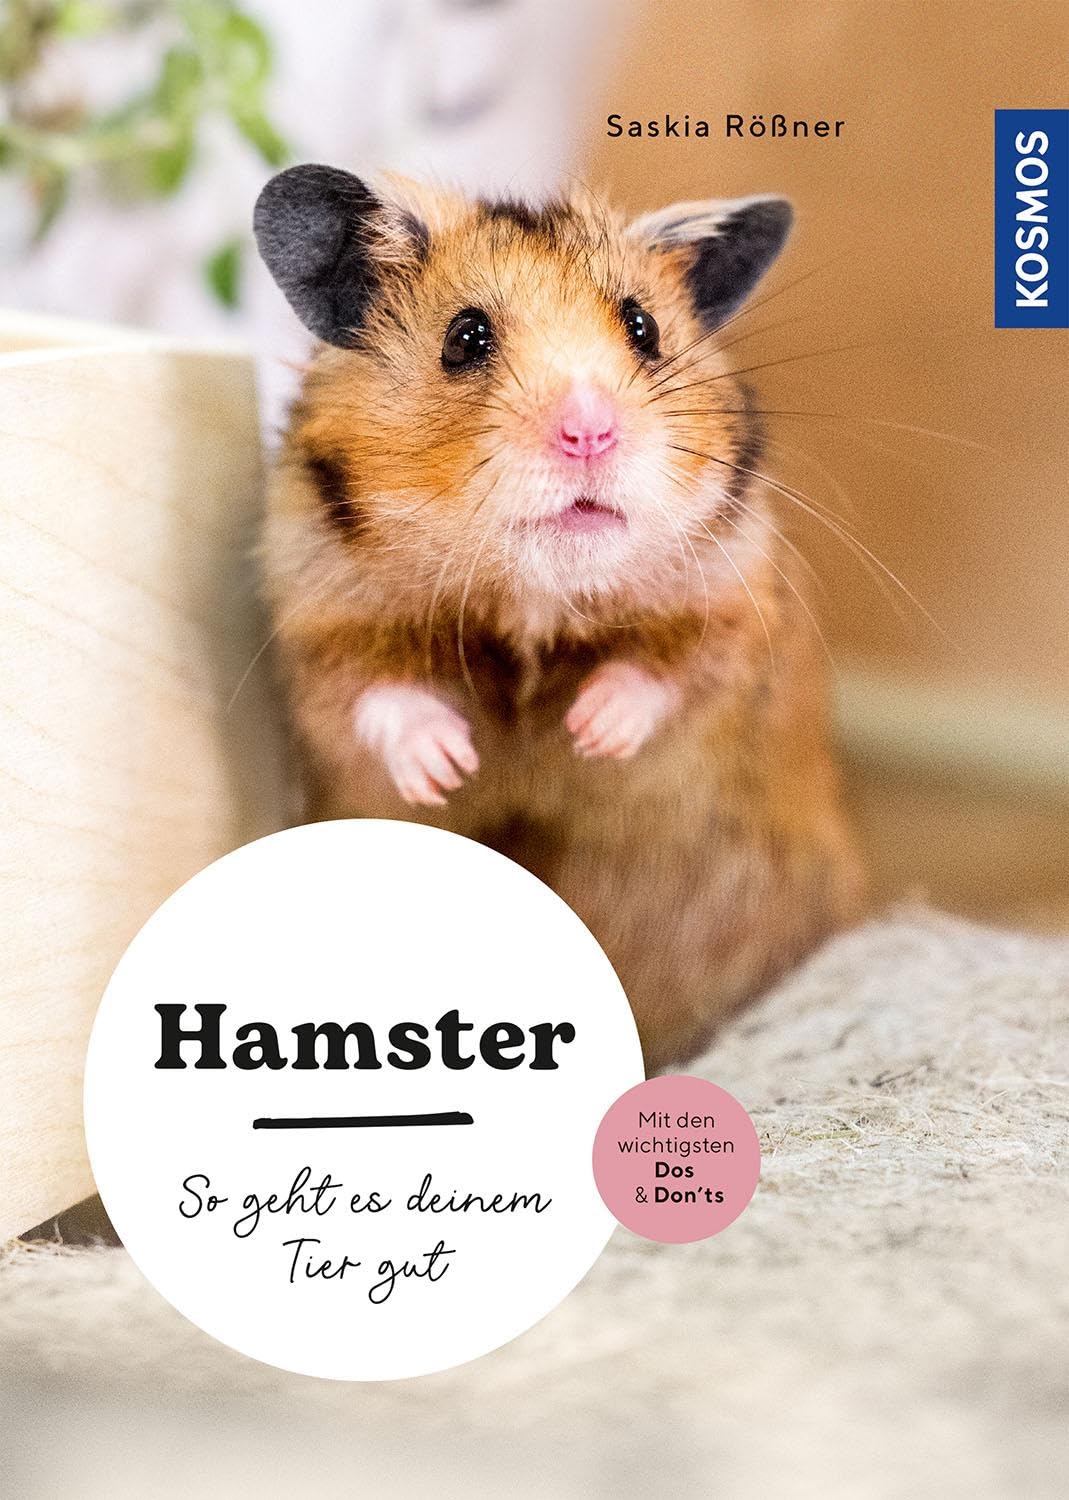 Titelseite des Buchs "Hamster: So geht es deinem Tier gut", geschrieben von der Hamsterhilfe Südwest